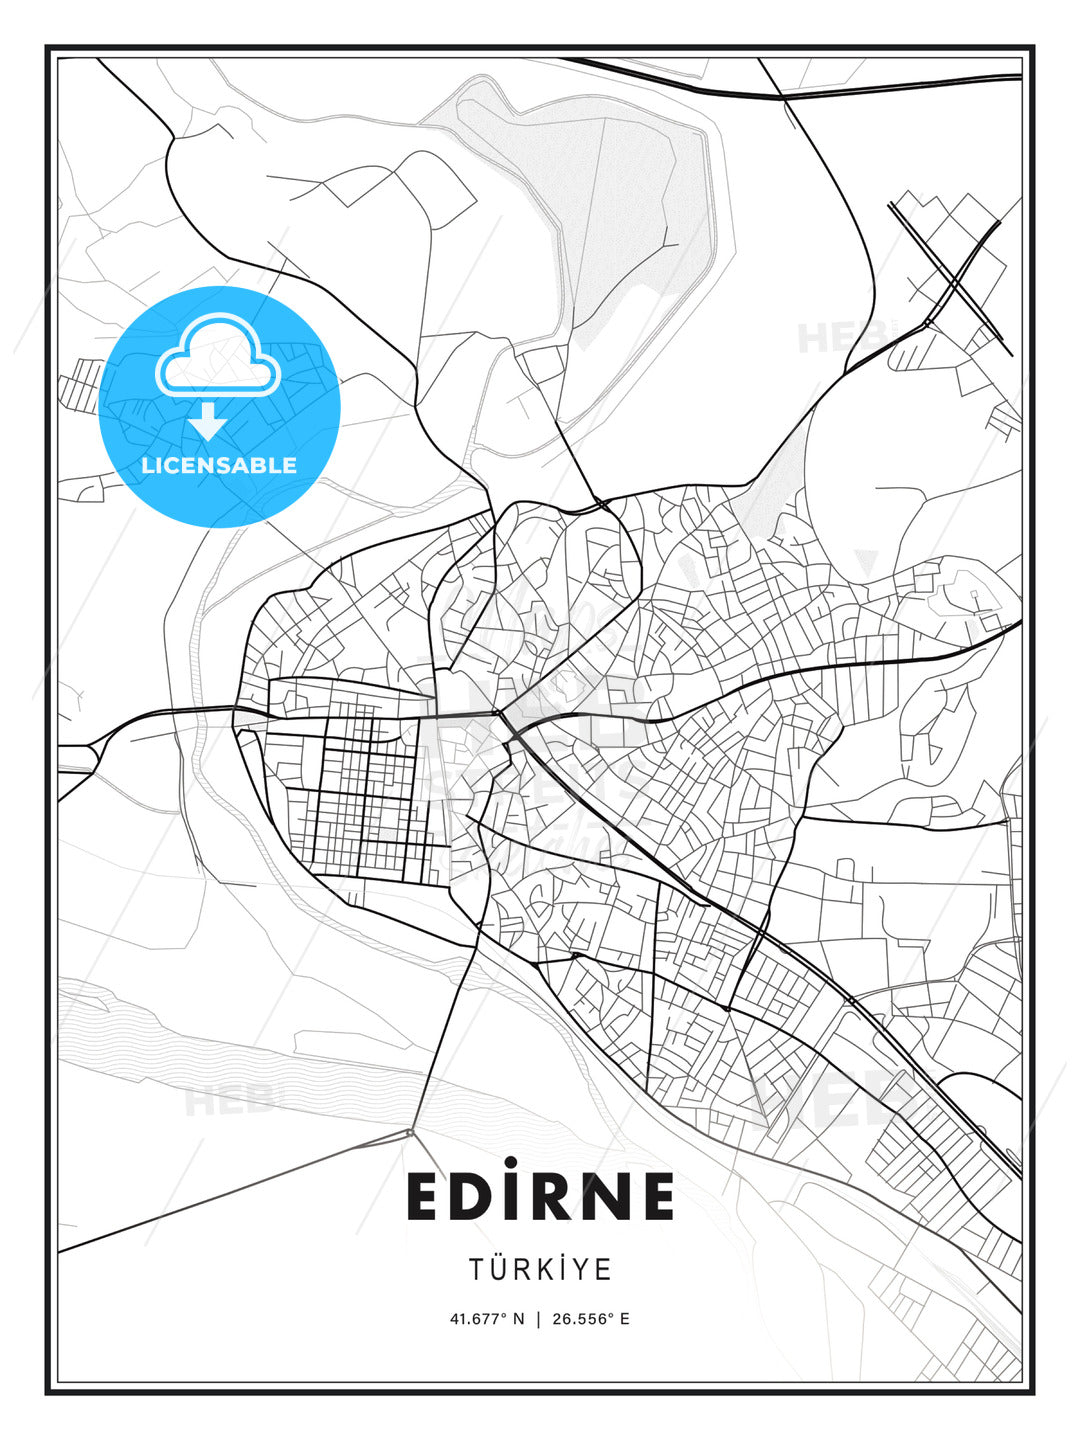 EDİRNE / Edirne, Turkey, Modern Print Template in Various Formats - HEBSTREITS Sketches